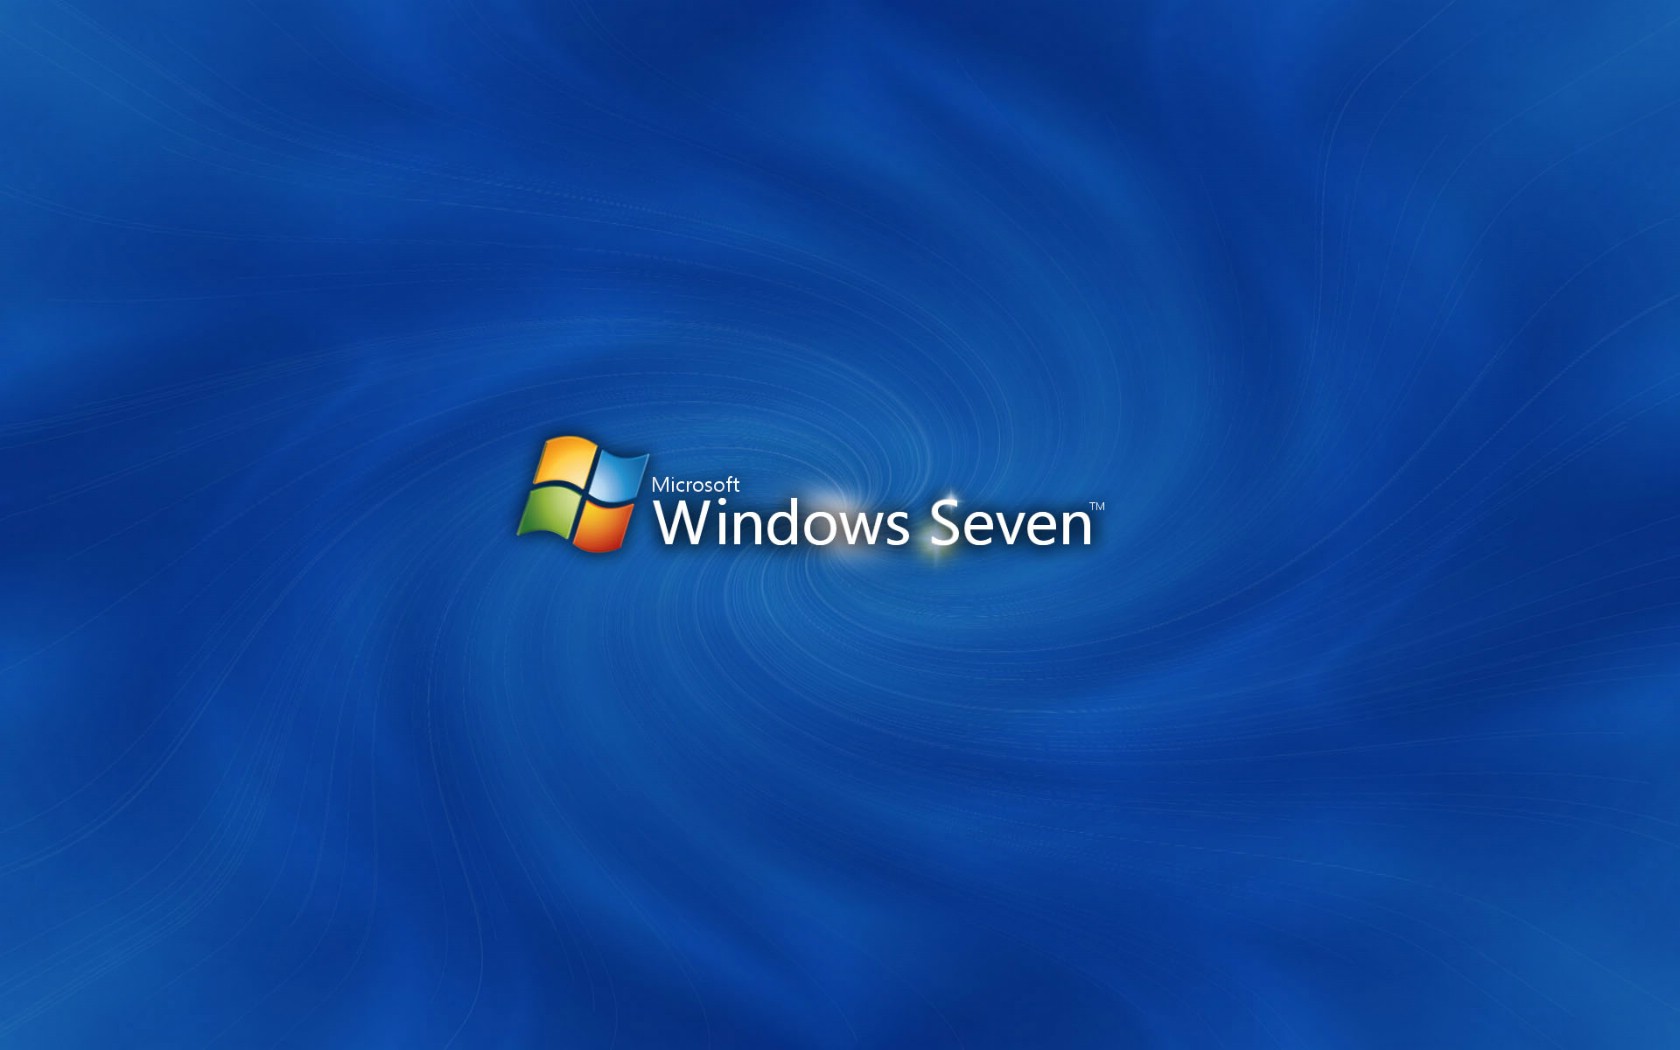 壁纸1680x1050Windows 7 正式版壁纸壁纸 Windows 7 正式版壁纸壁纸 Windows 7 正式版壁纸图片 Windows 7 正式版壁纸素材 其他壁纸 其他图库 其他图片素材桌面壁纸